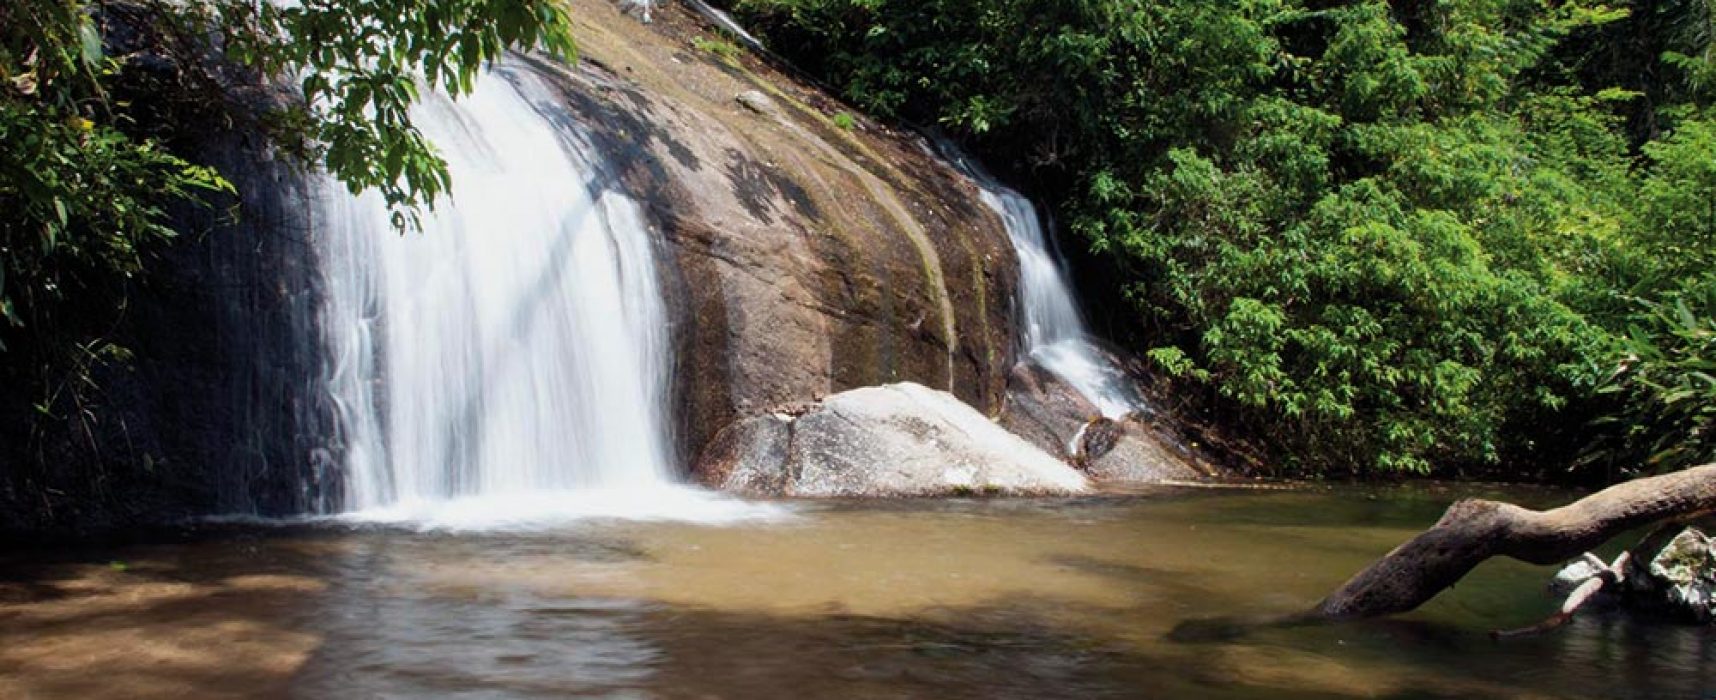 Ecoturismo – Aventure-se na mata entre rios e cachoeiras